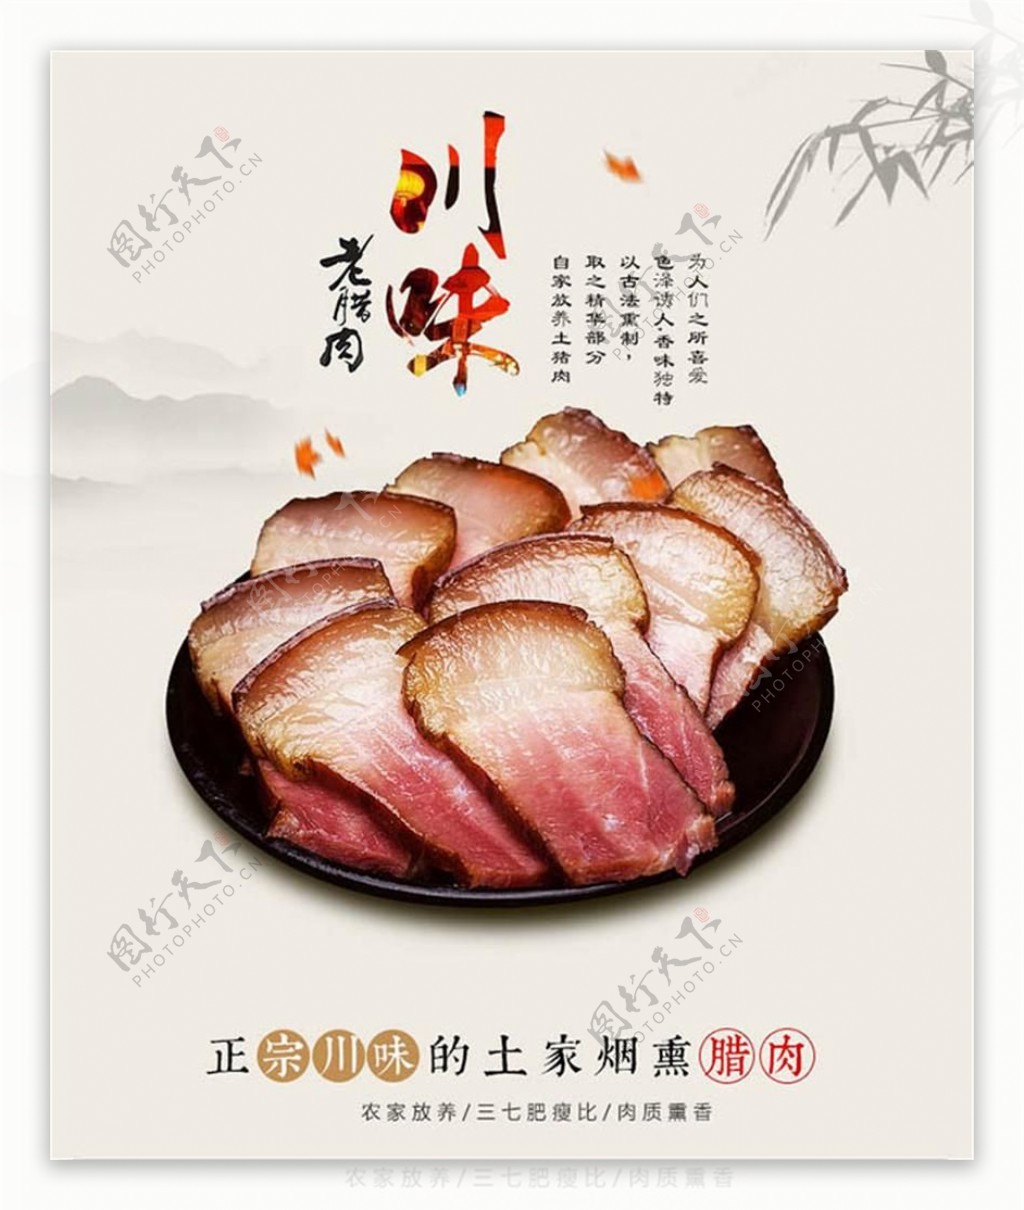 川味老腊肉美食海报设计psd素材